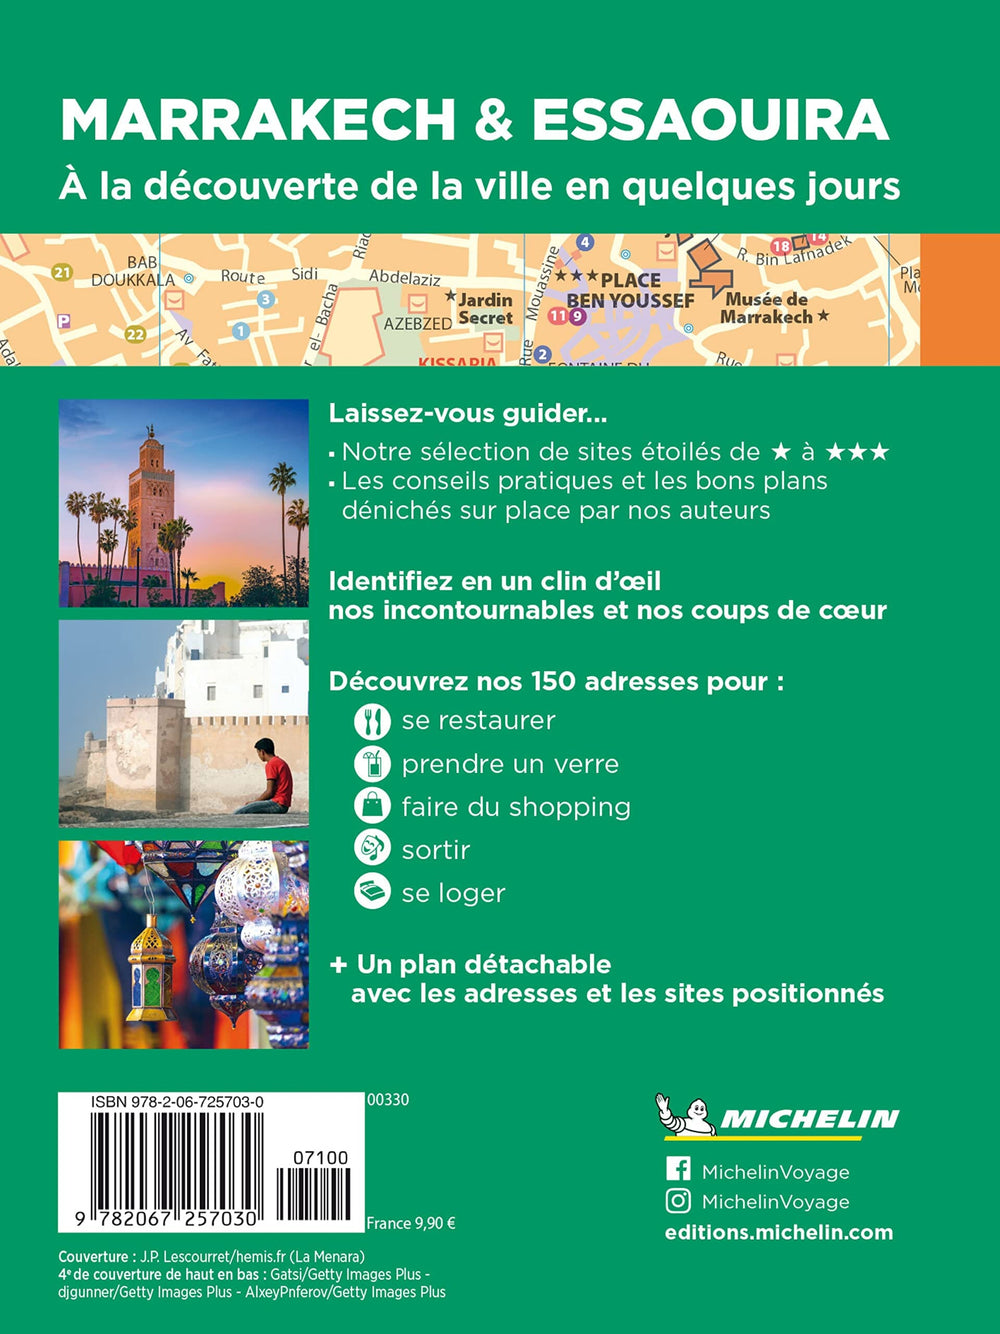 Guide Vert Week & GO - Marrakech et Essaouira + plan | Michelin guide de conversation Michelin 